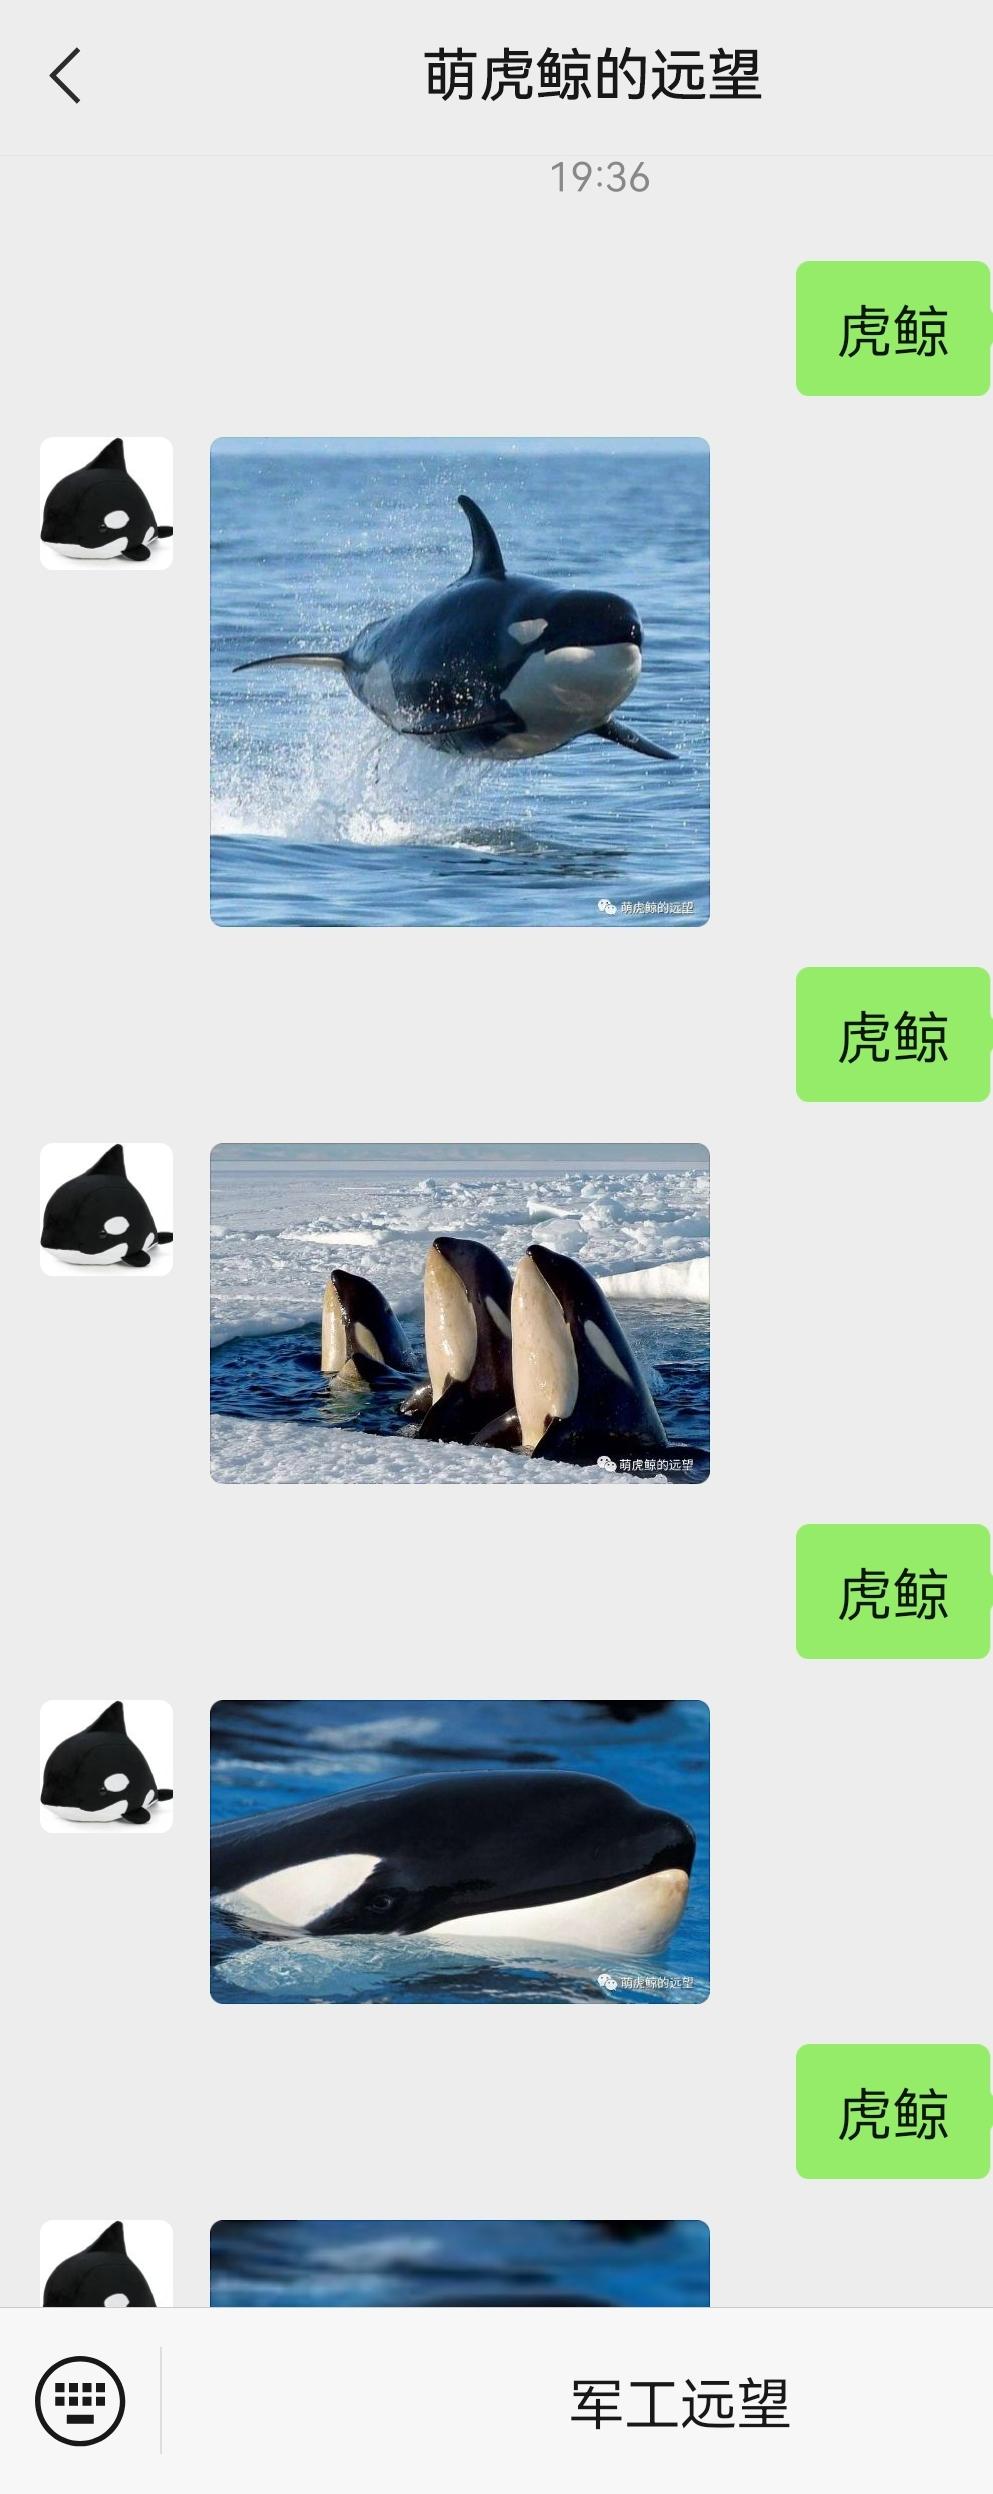 萌虎鲸 的想法: 微信公众号中回复"虎鲸",有惊喜